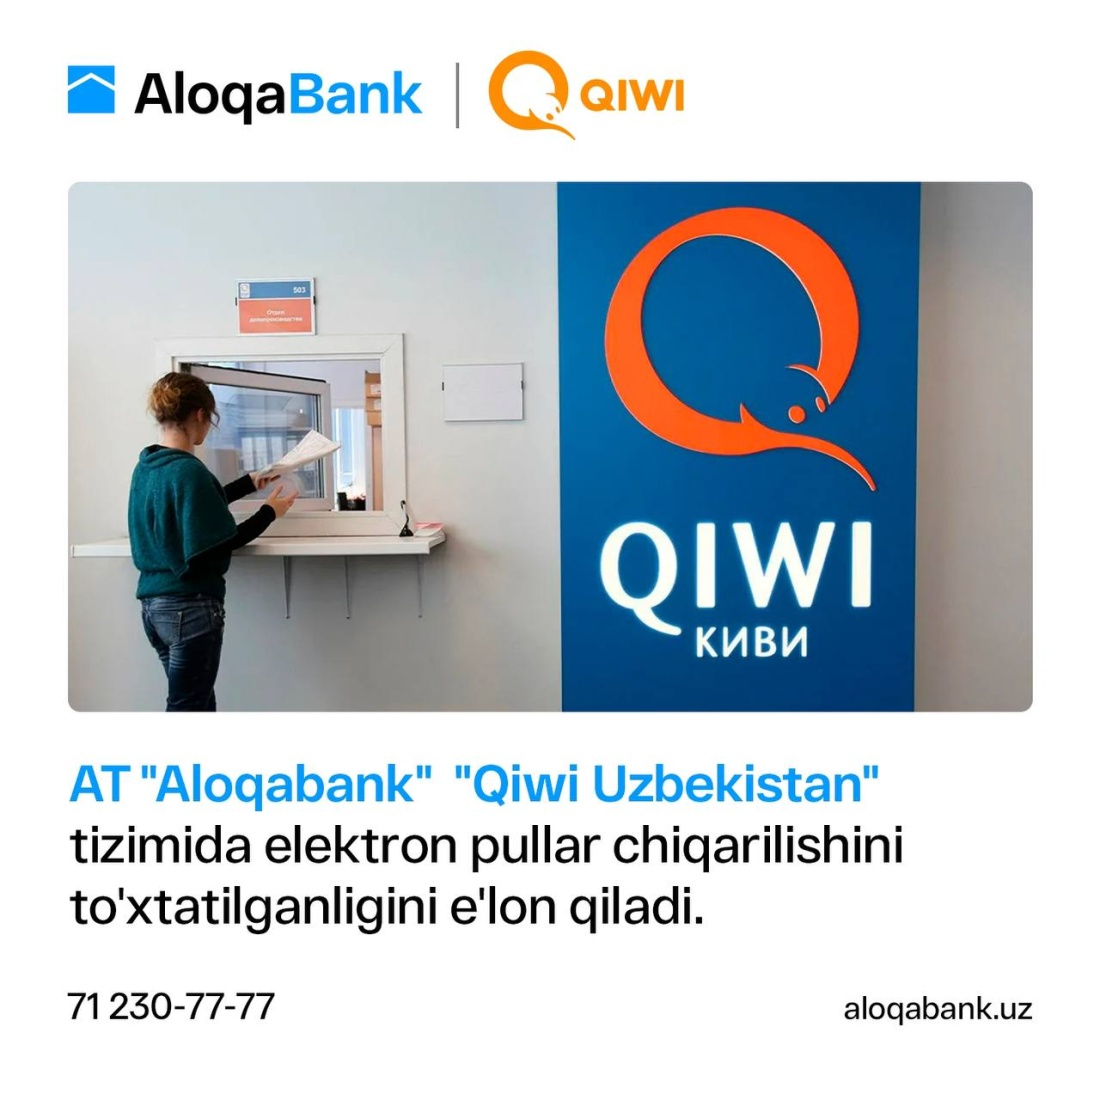 AloqaBank "Qiwi Uzbekistan" tizimida elektron pullar chiqarilishini to'xtatilganligini e'lon qiladi.